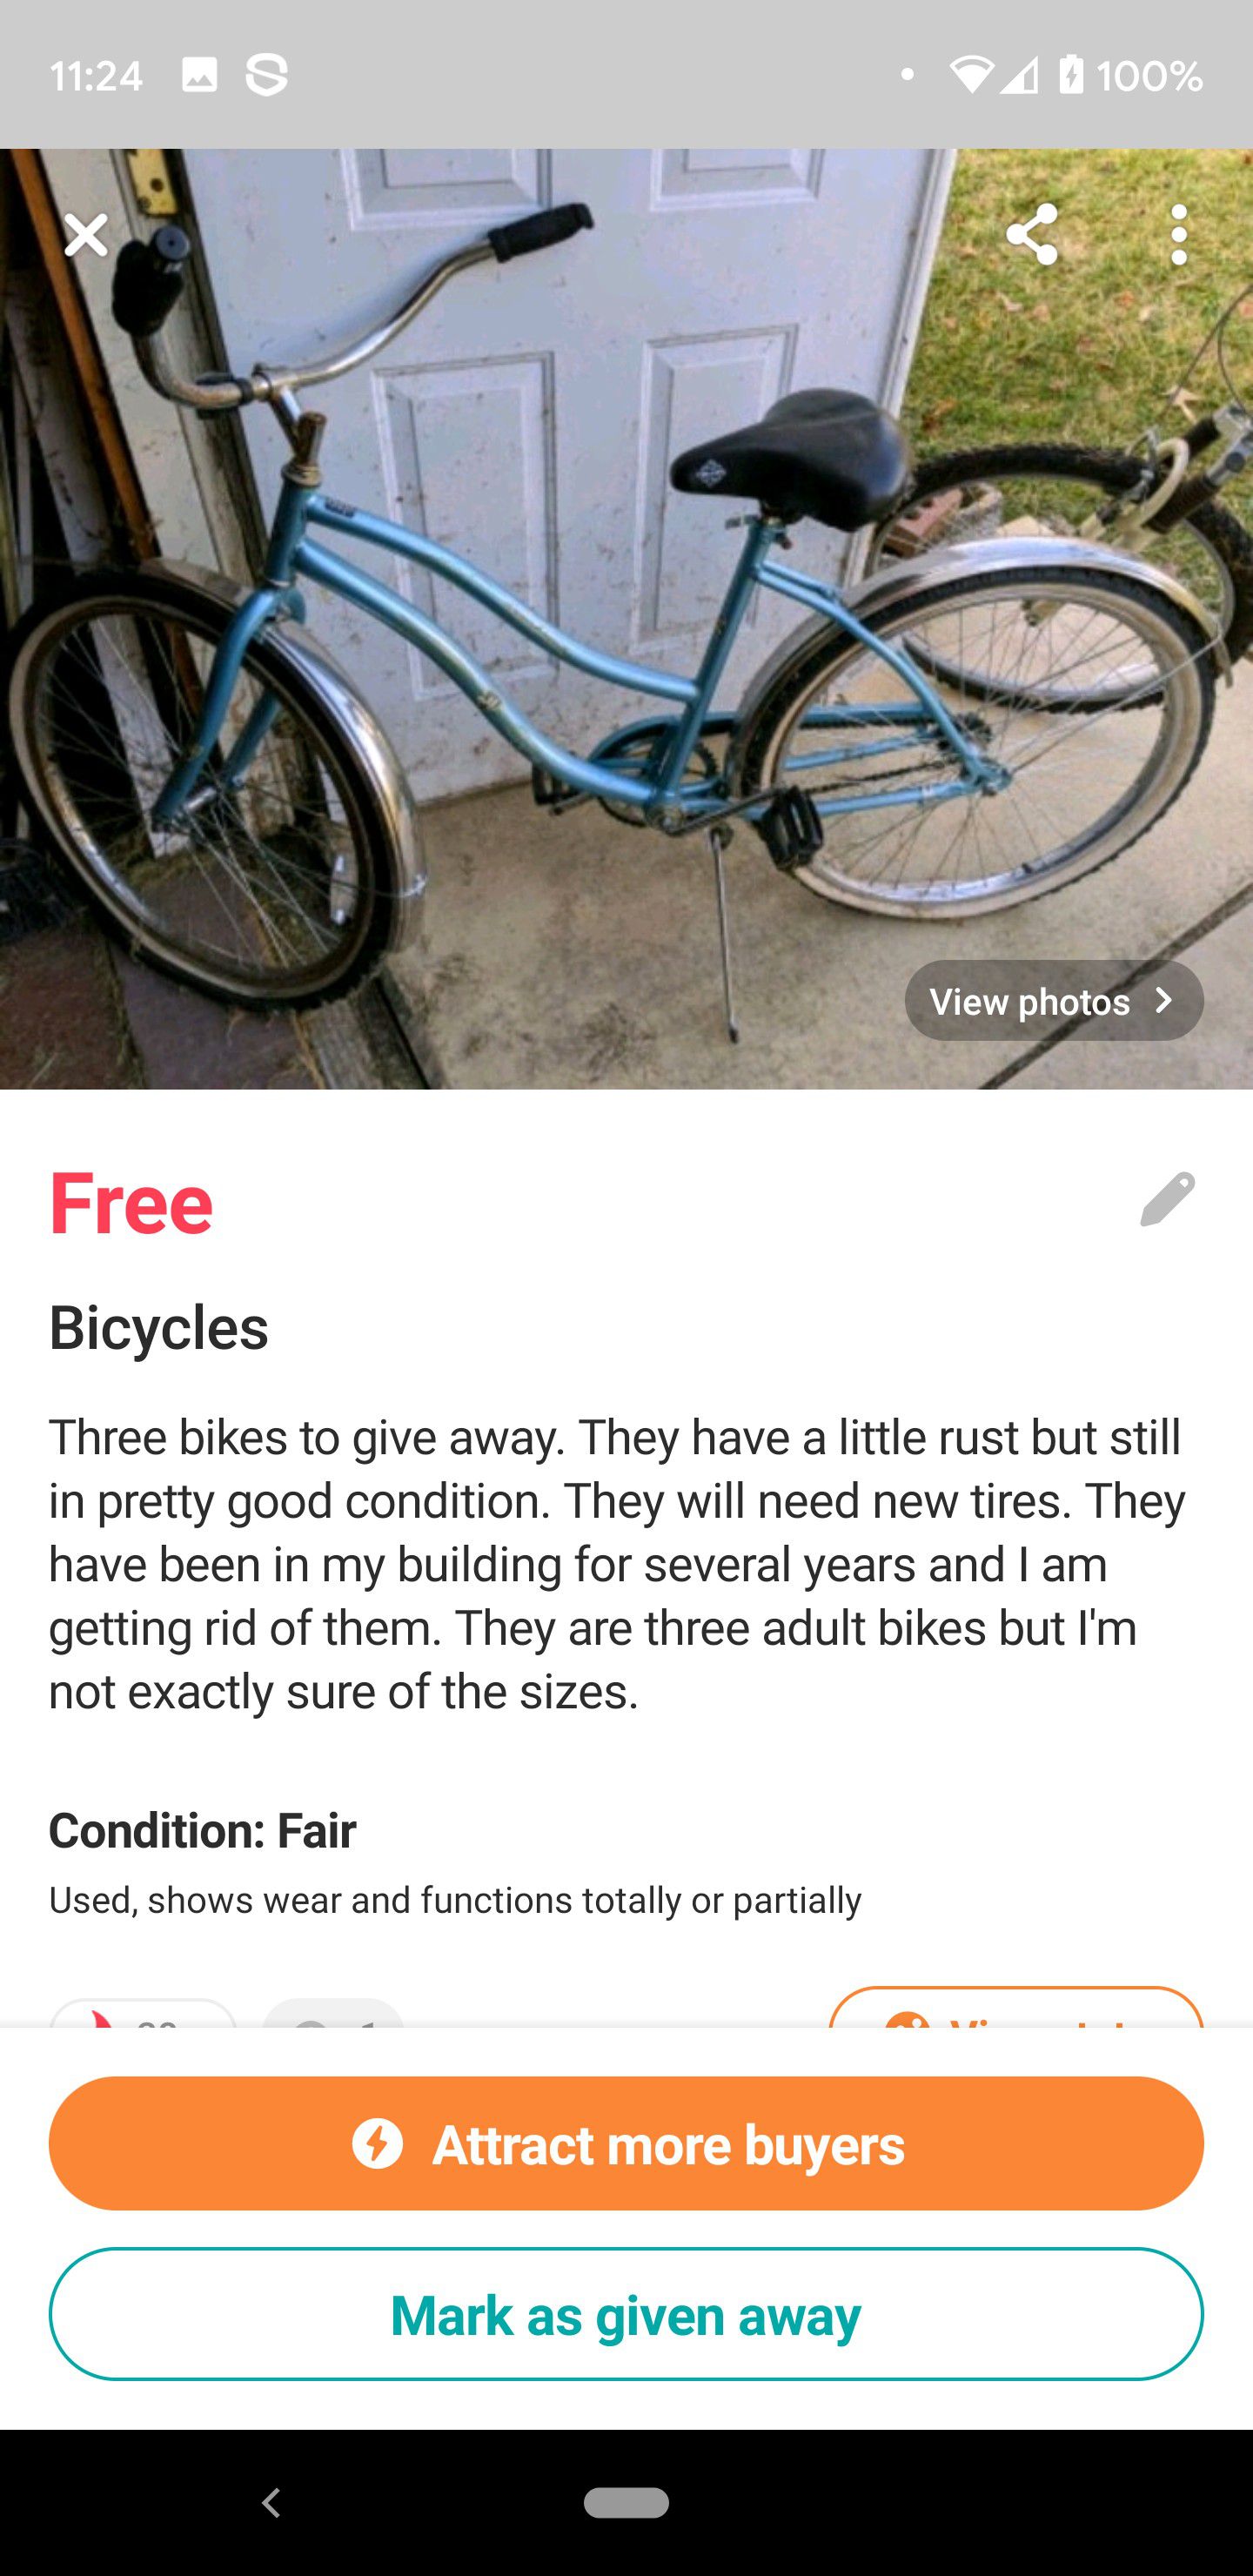 Free bikes